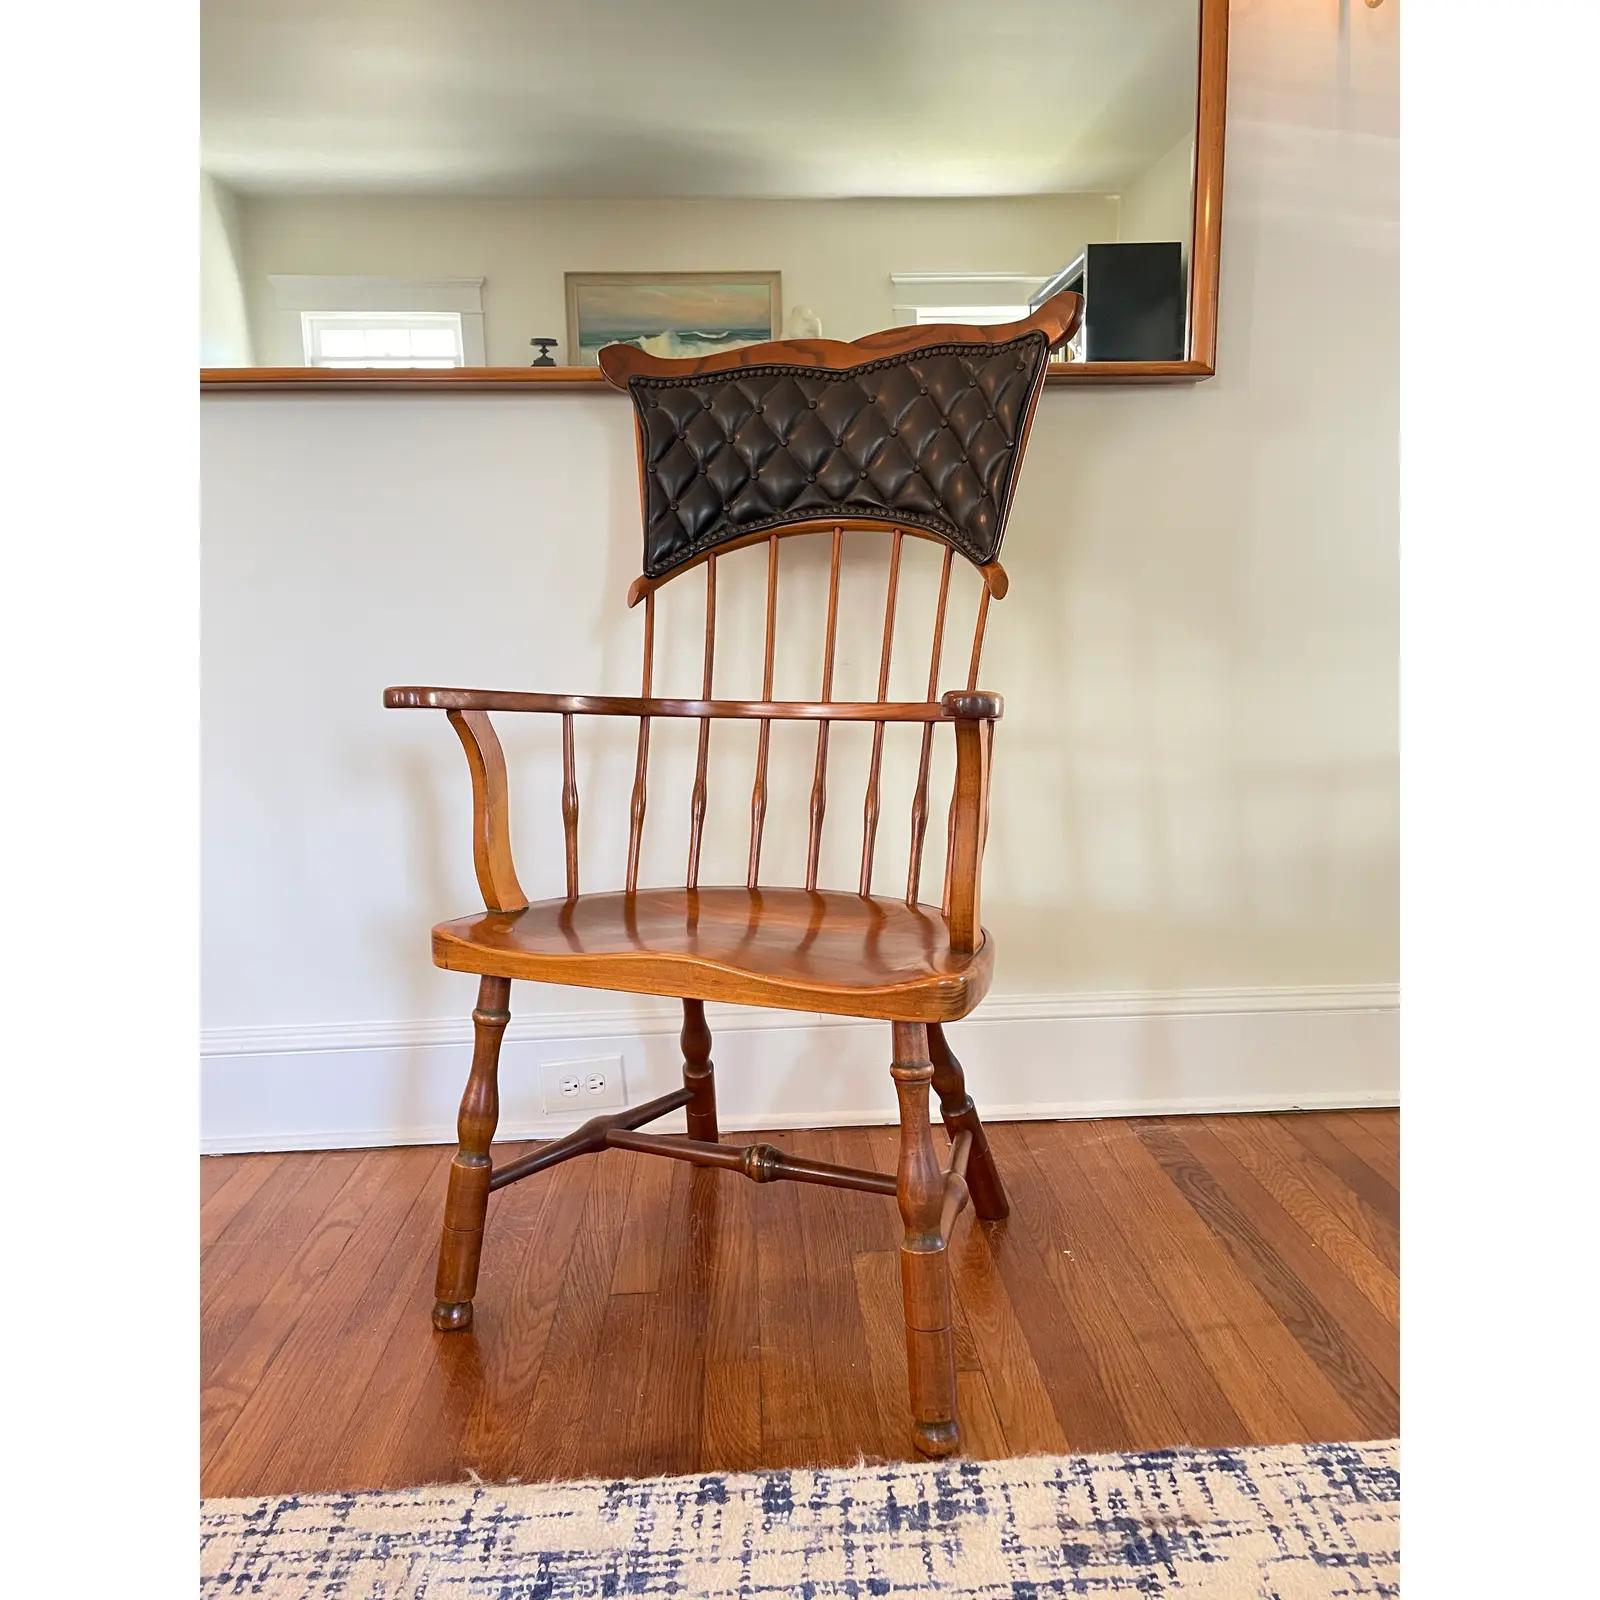 Superbe chaise classique Duckloe Brothers Mystic Seaport. Windsor Highback avec dossier en cuir touffeté, fixé par des clous.
En bordure de route vers NYC/Philly $400